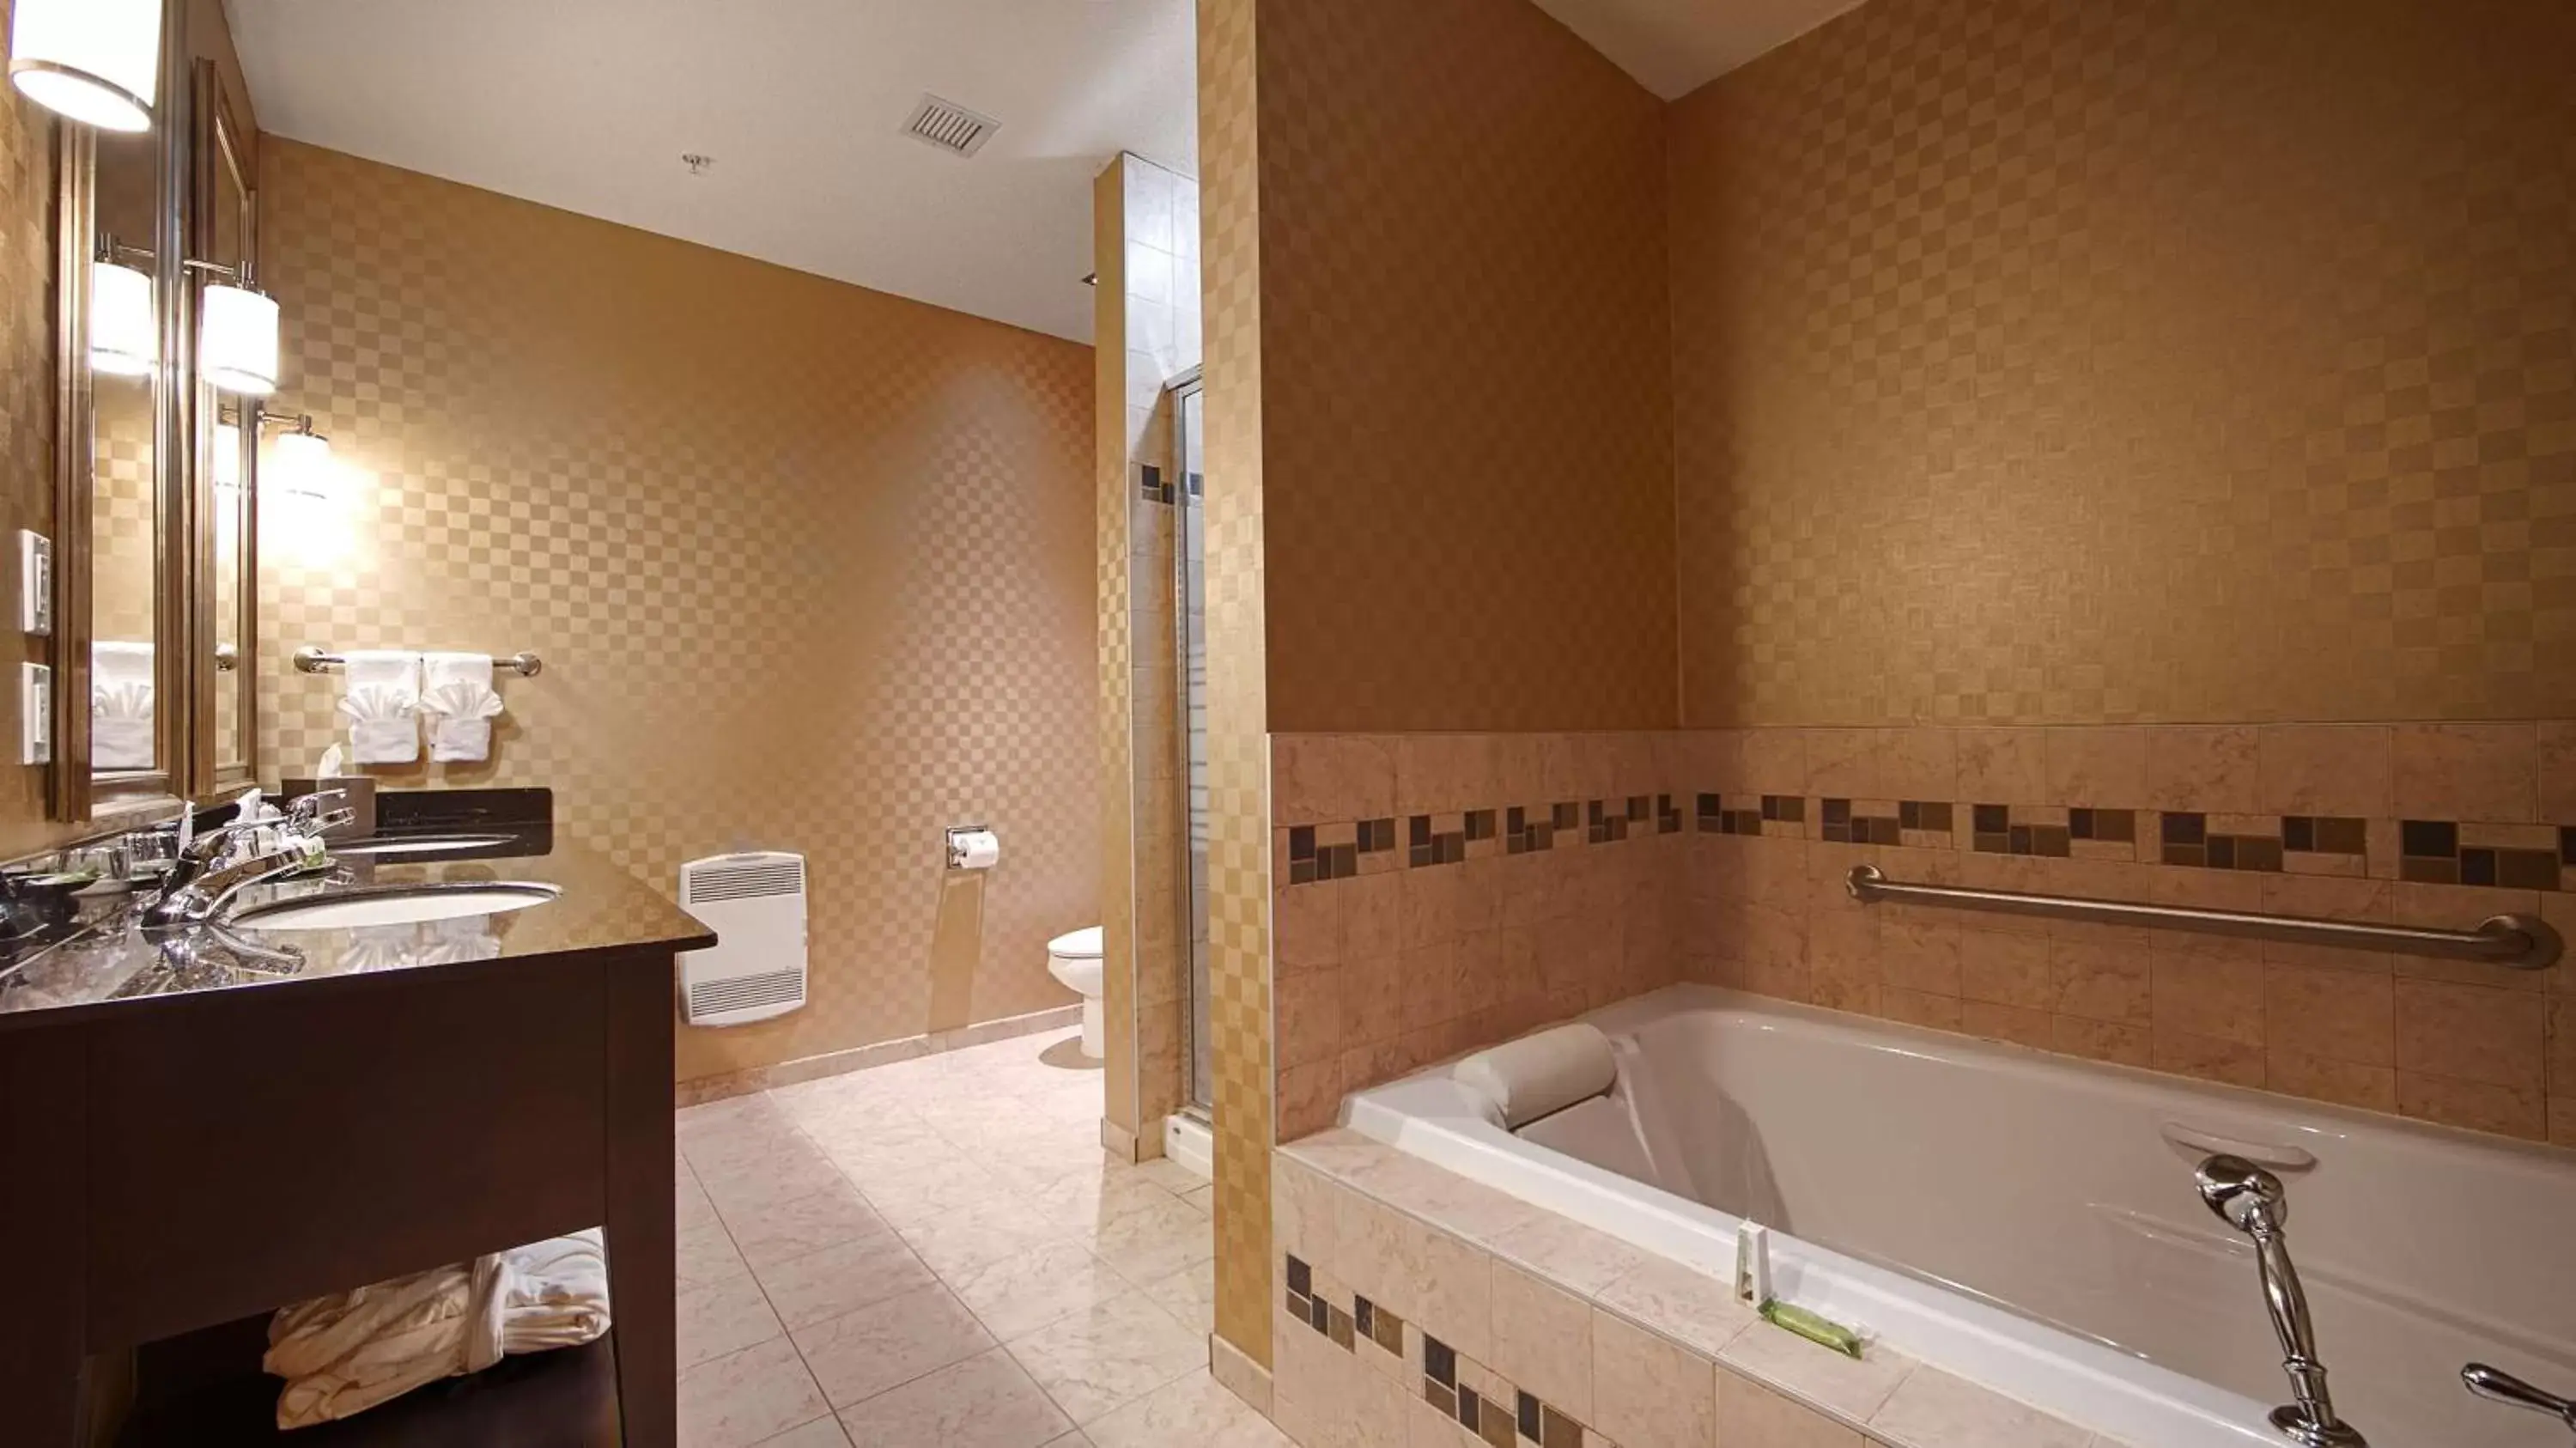 Shower, Bathroom in Best Western Sunrise Inn & Suites